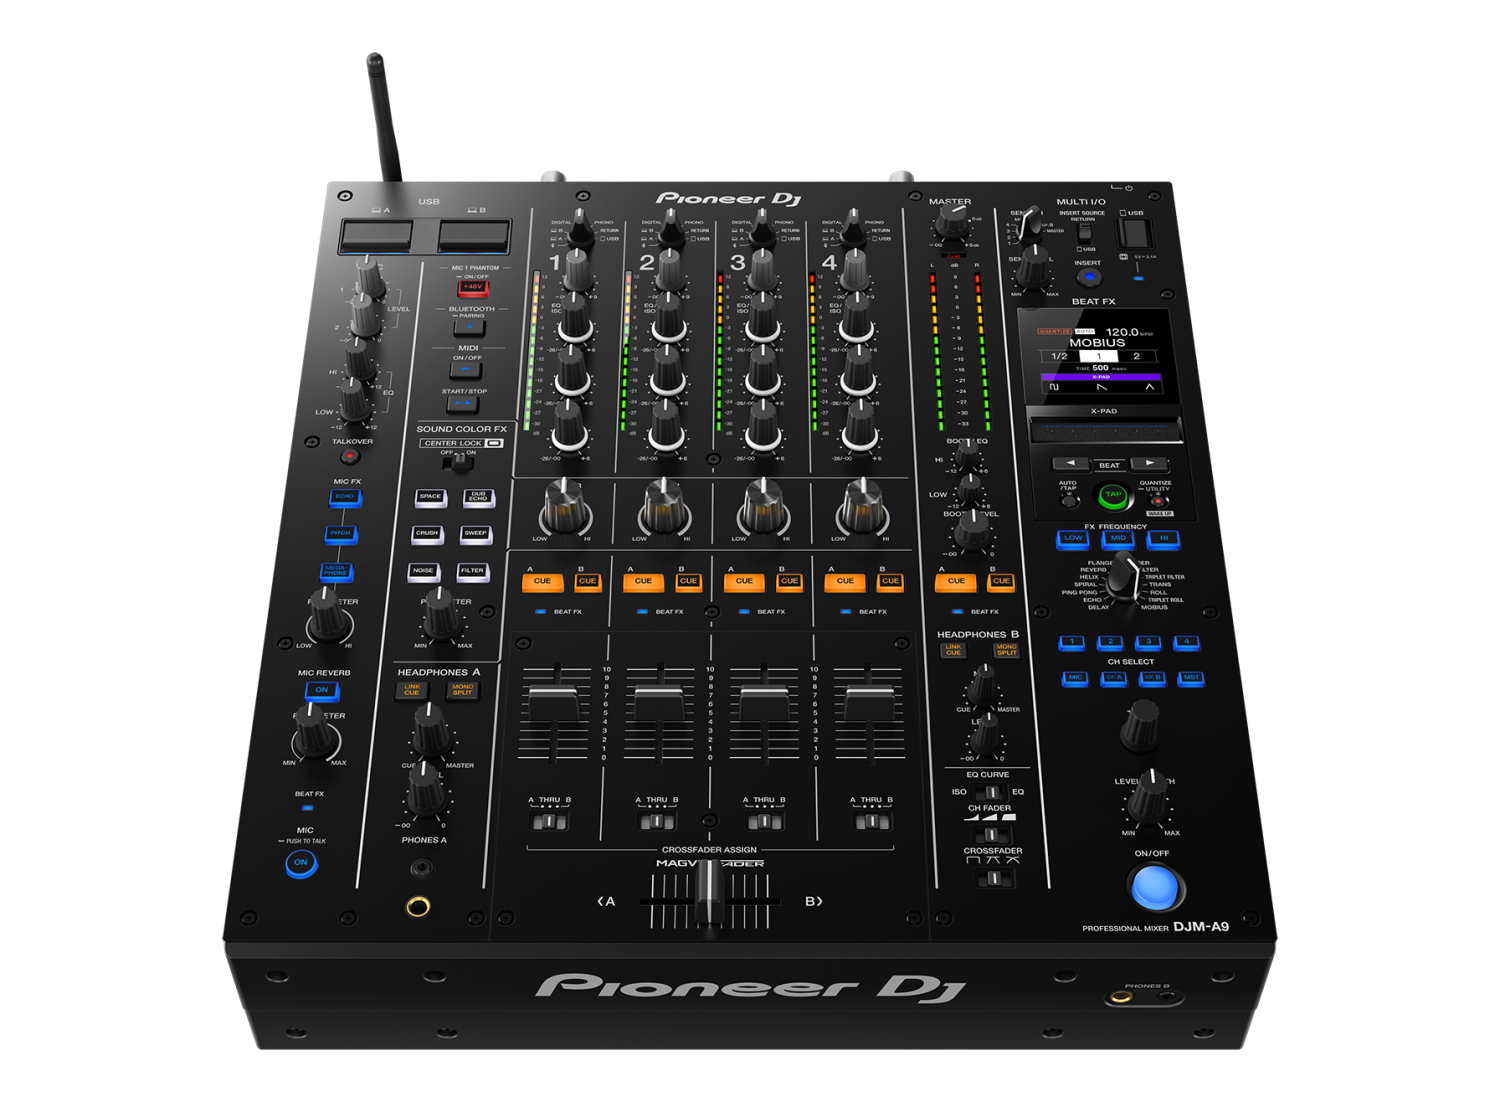 Table de Mixage DJ 7 Canaux, Table Mixage Audio USB Alimentation Fantôme  48V, Console de Mixage d'Enregistrement pour Ordinateur Microphone Lecteur